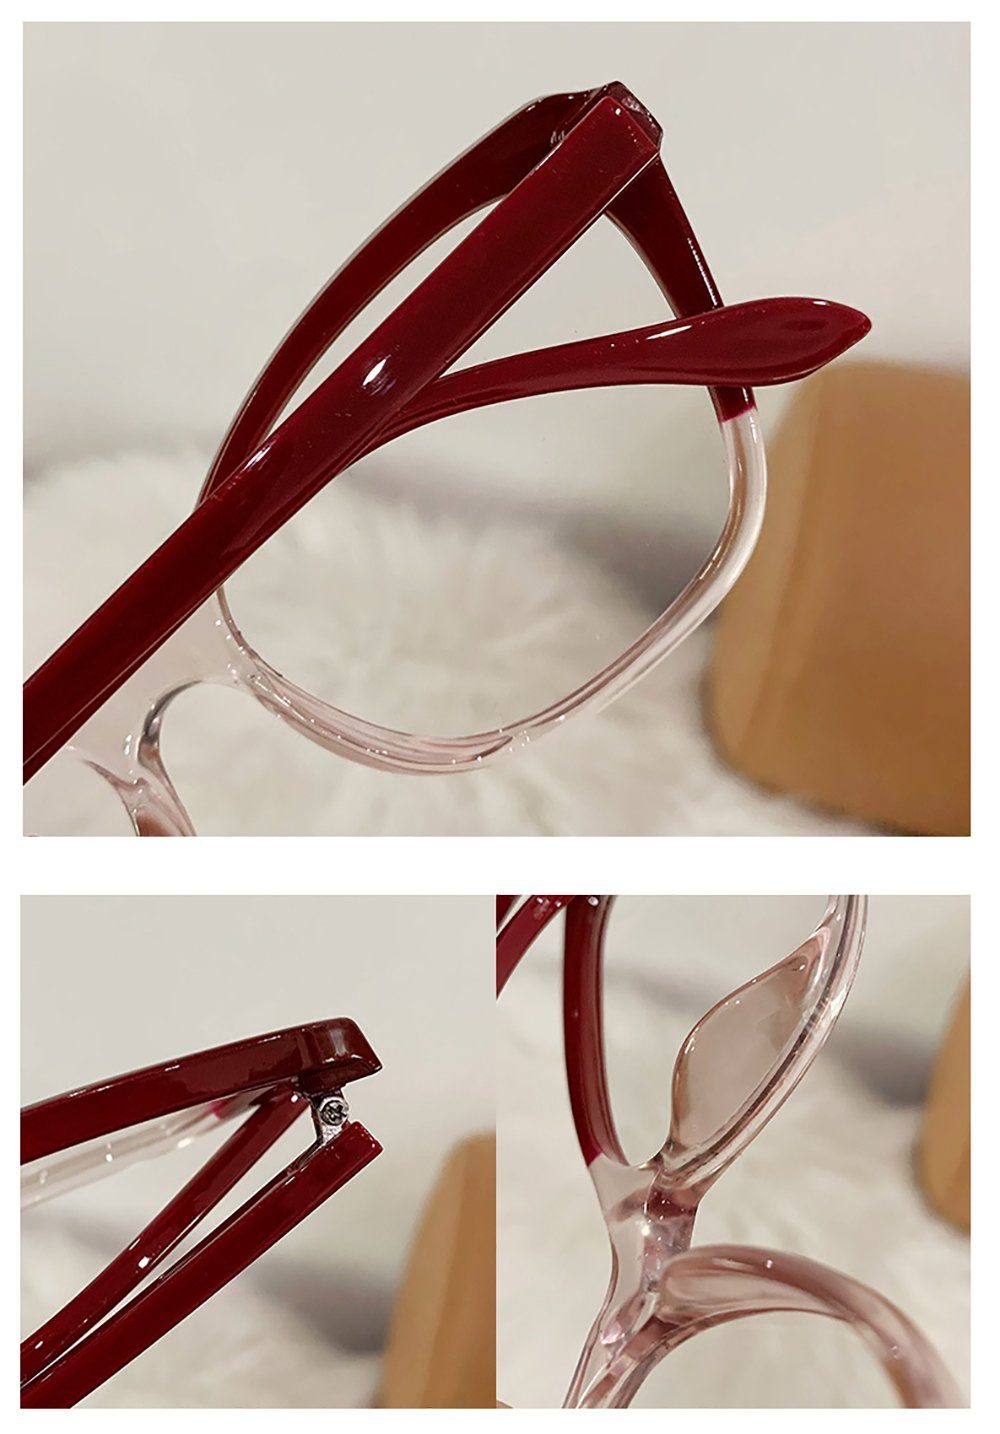 PACIEA ändert Gläser Brille Katzenaugenfarbe Anti-Blaulicht rot flache